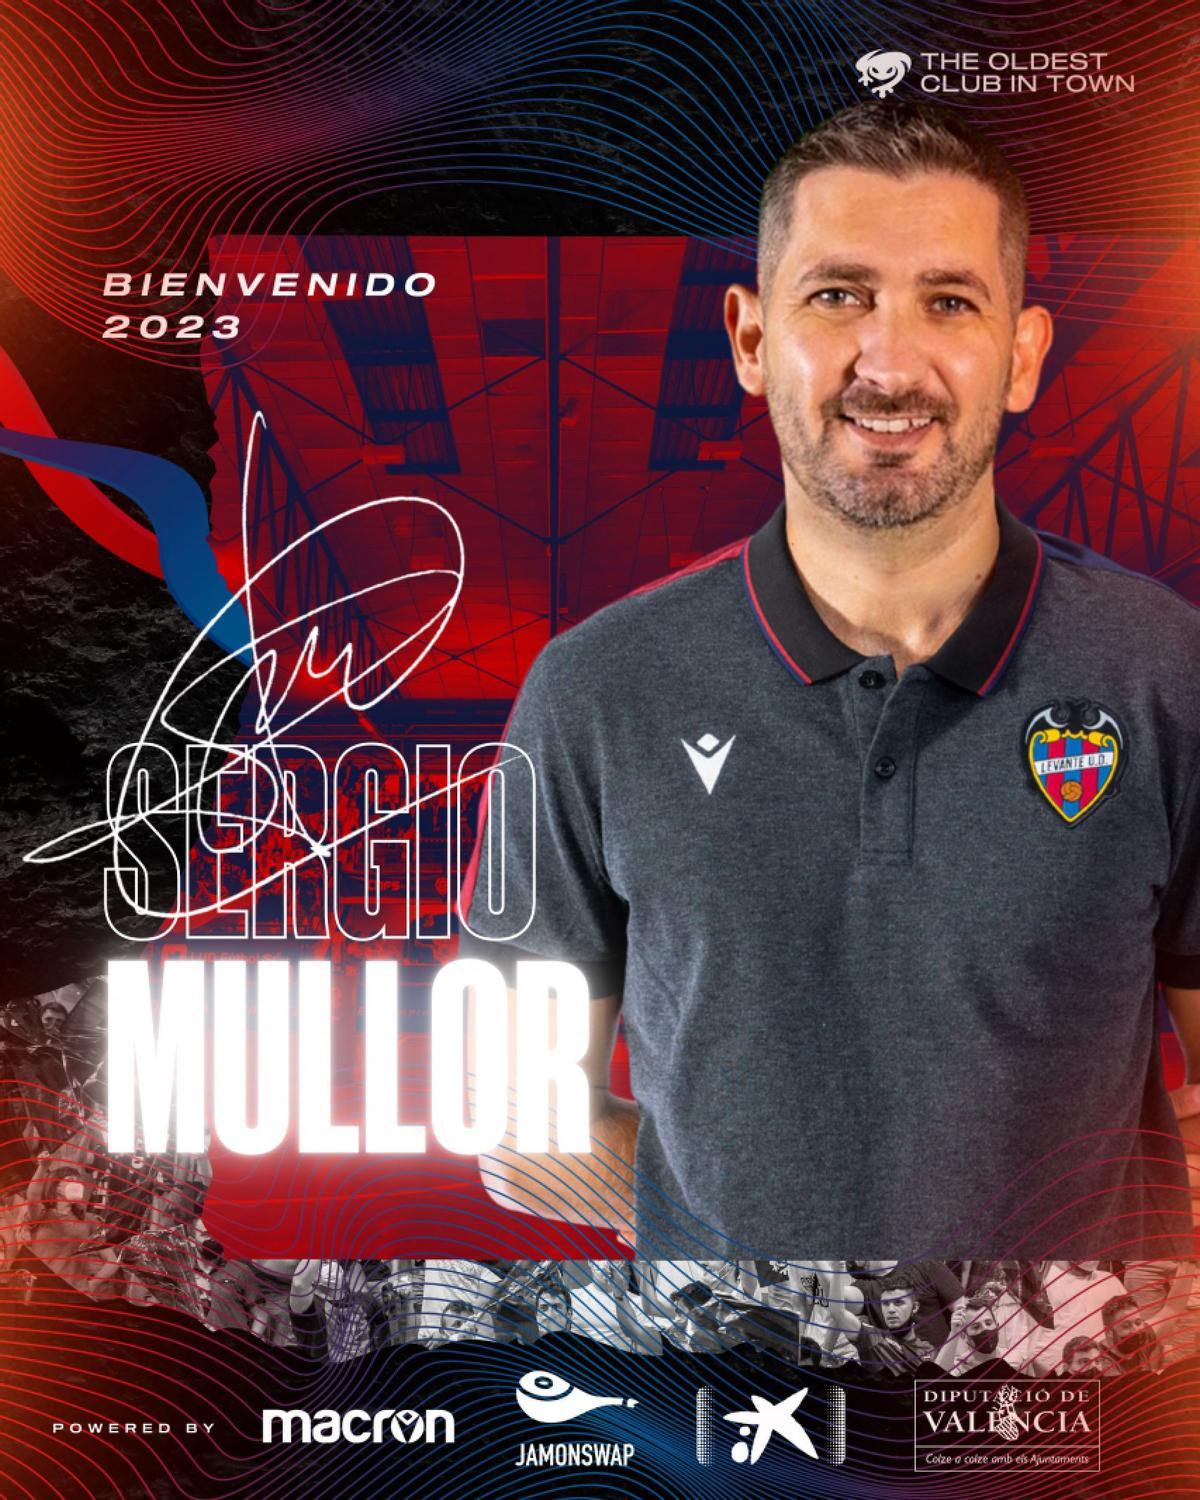 Bienvenida del Levante UD FS a Sergio Mullor